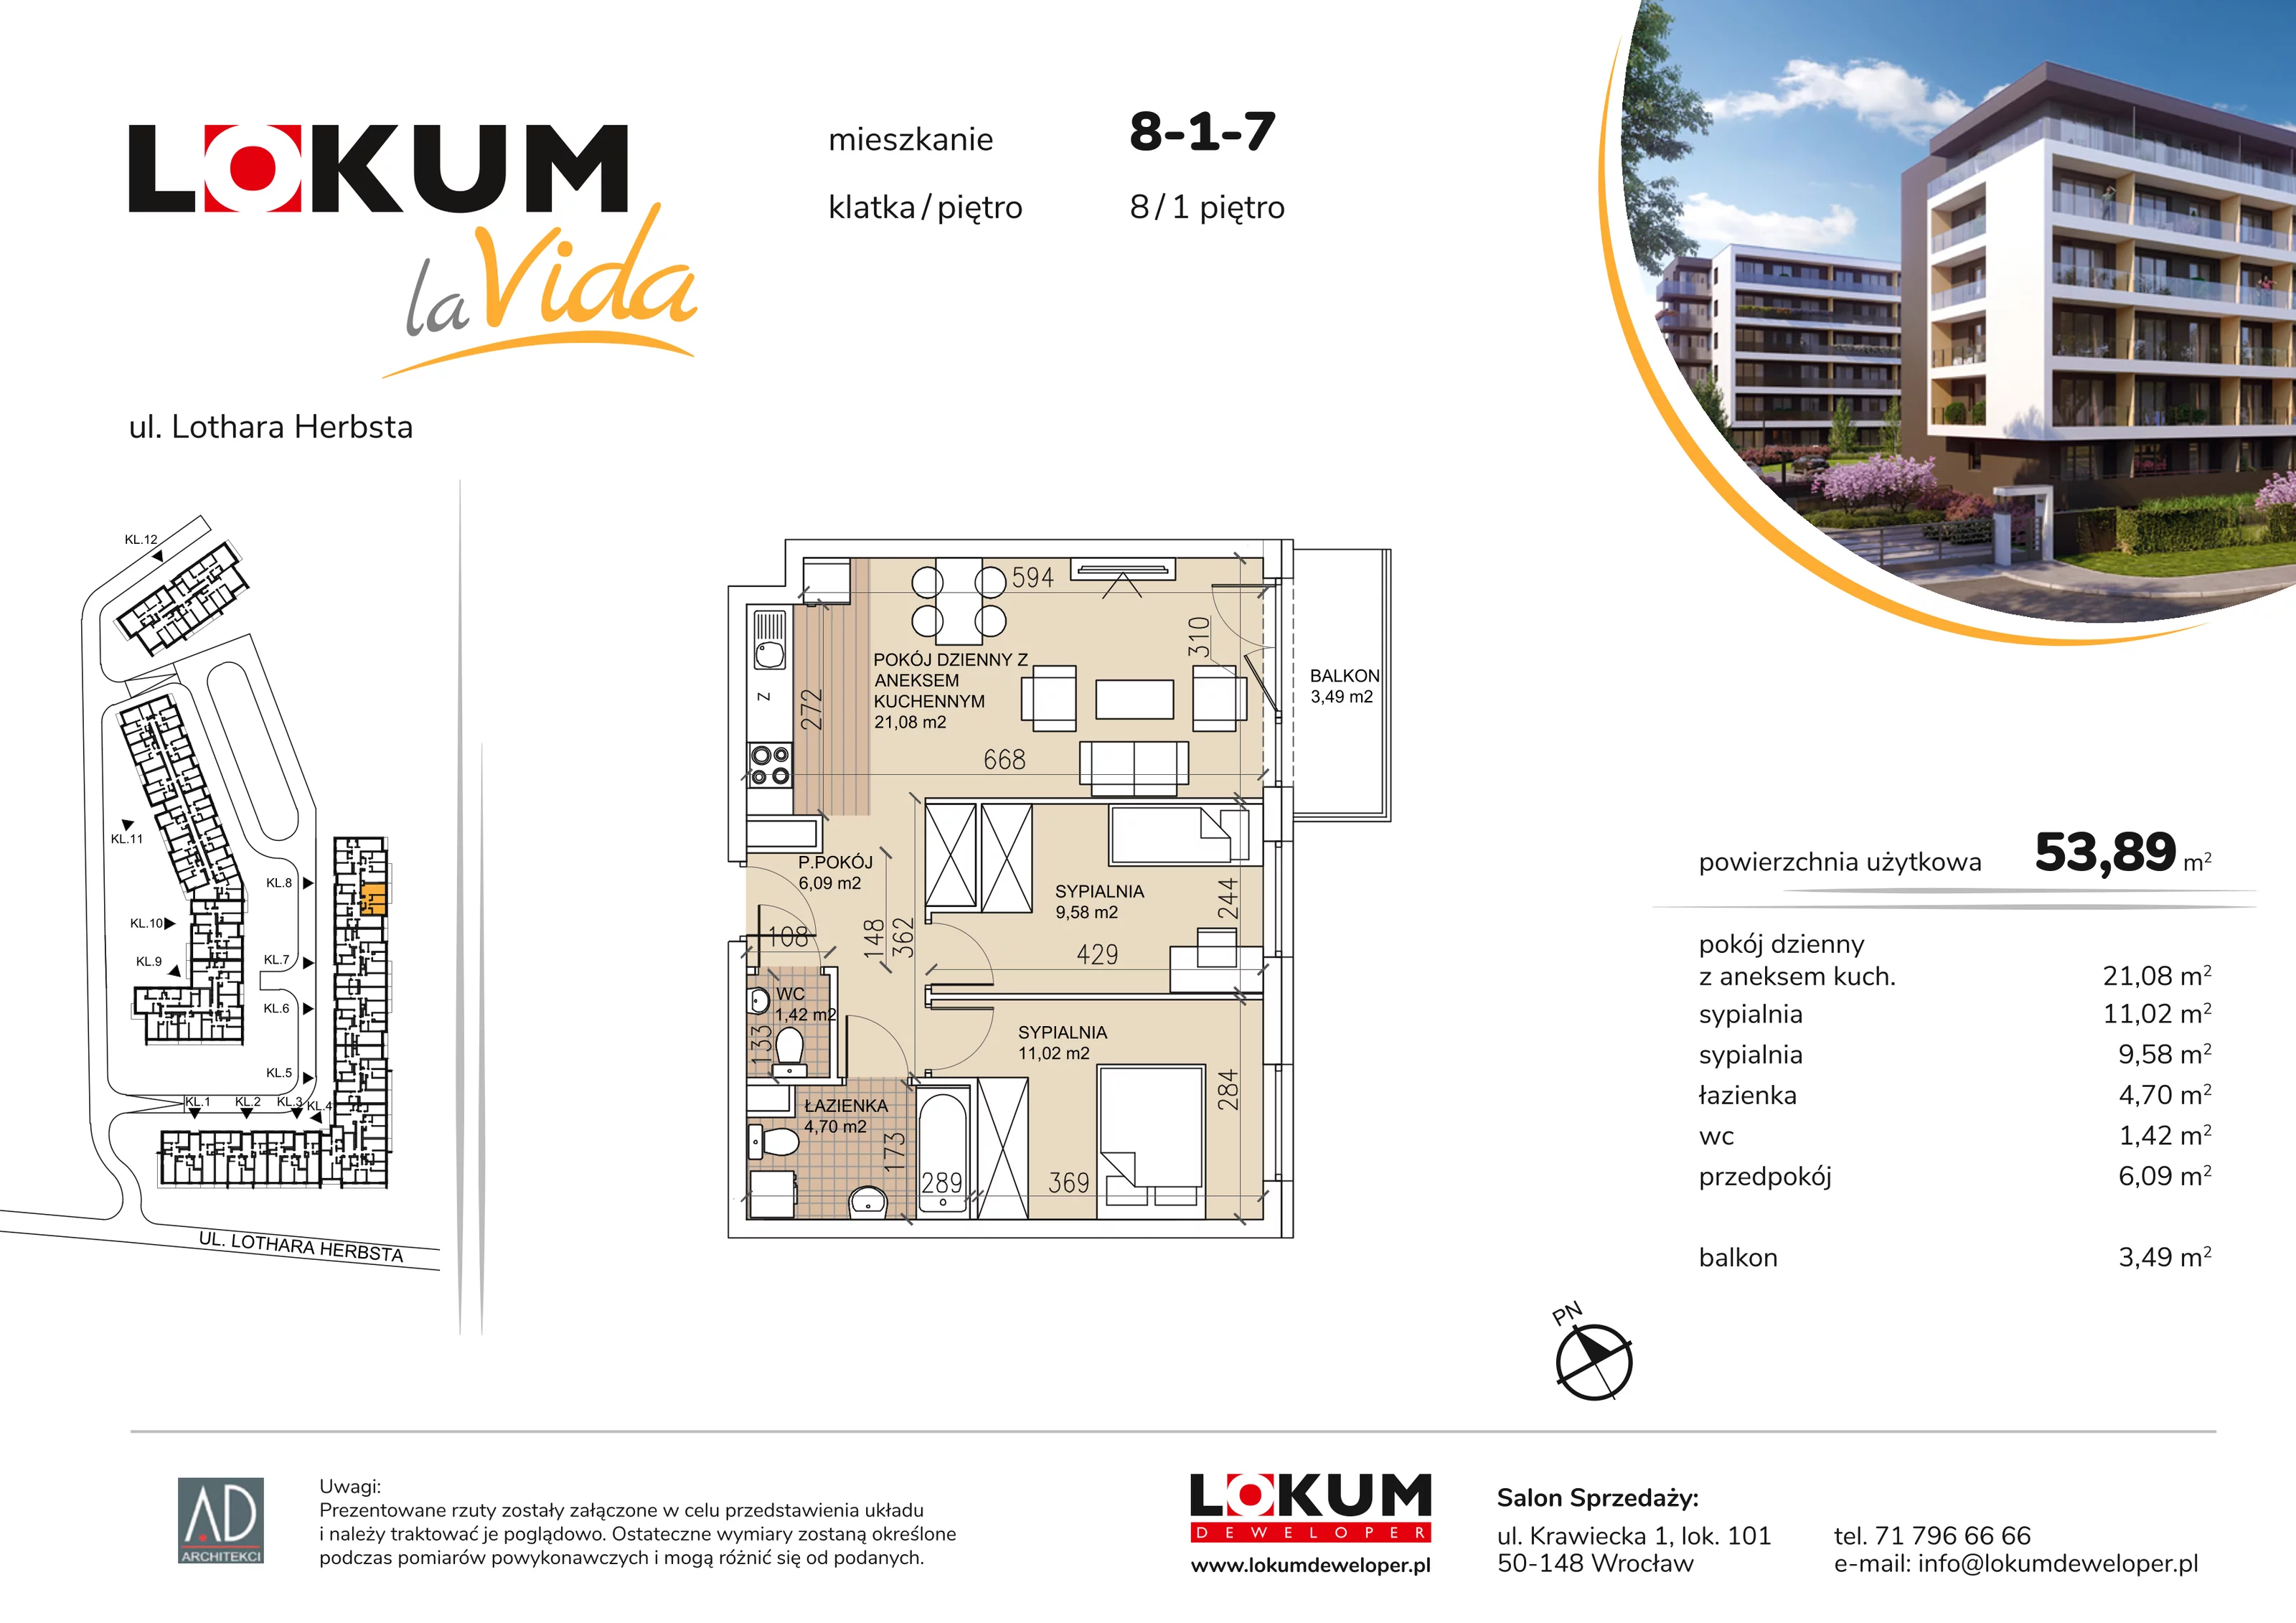 Mieszkanie 53,89 m², piętro 1, oferta nr 8-1-7, Lokum la Vida, Wrocław, Sołtysowice, ul. Lothara Herbsta